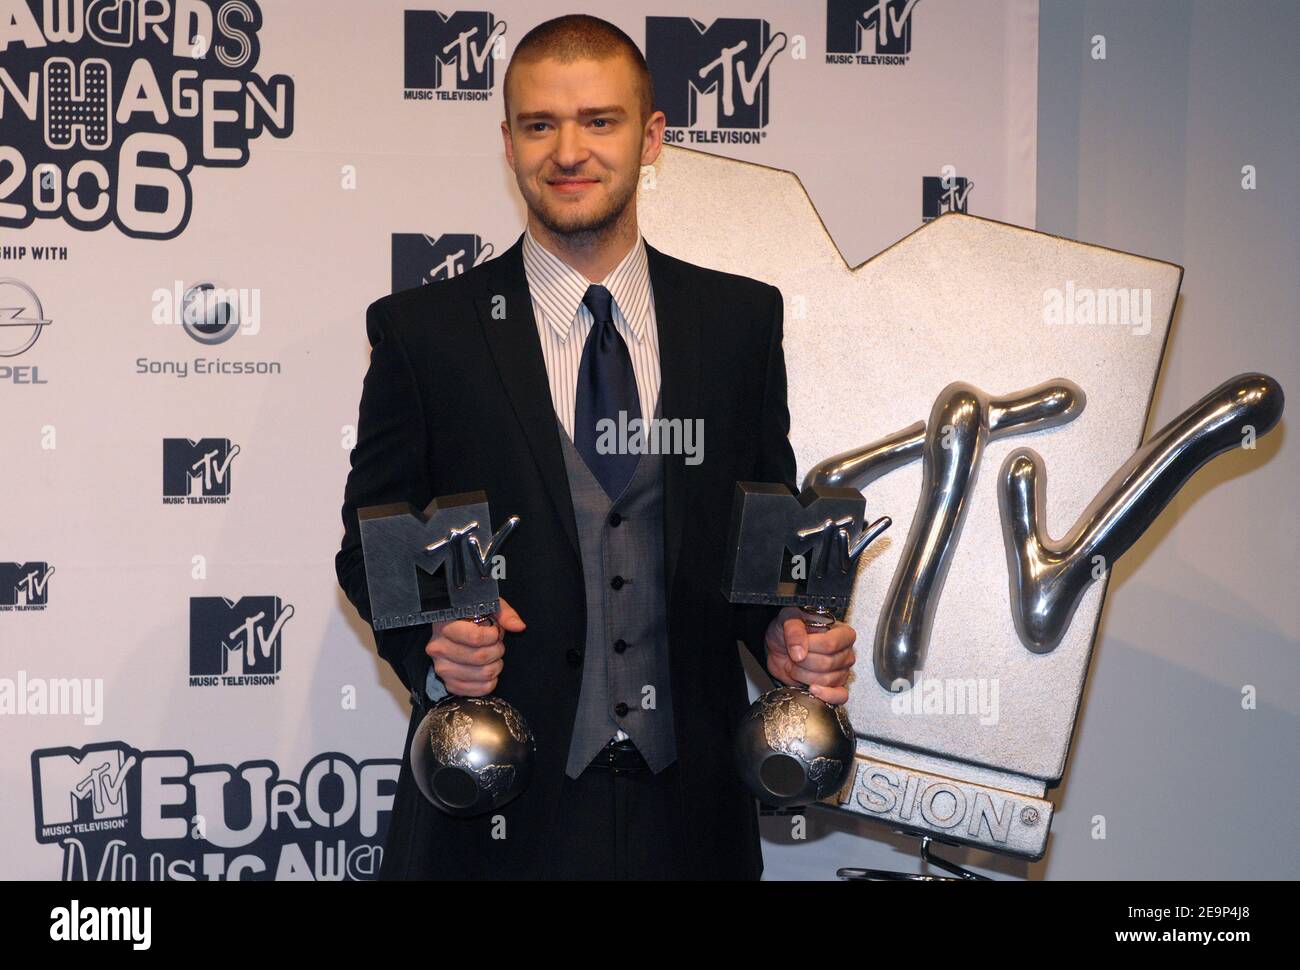 Justin Timberlake pose des photos dans la salle de presse des MTV Europe Awards 2006, qui se sont tenus au Bella Center de Copenhague, Danemark, le 2 novembre 2006. Photo de Nicolas Khayat/ABACAPRESS.COM Banque D'Images